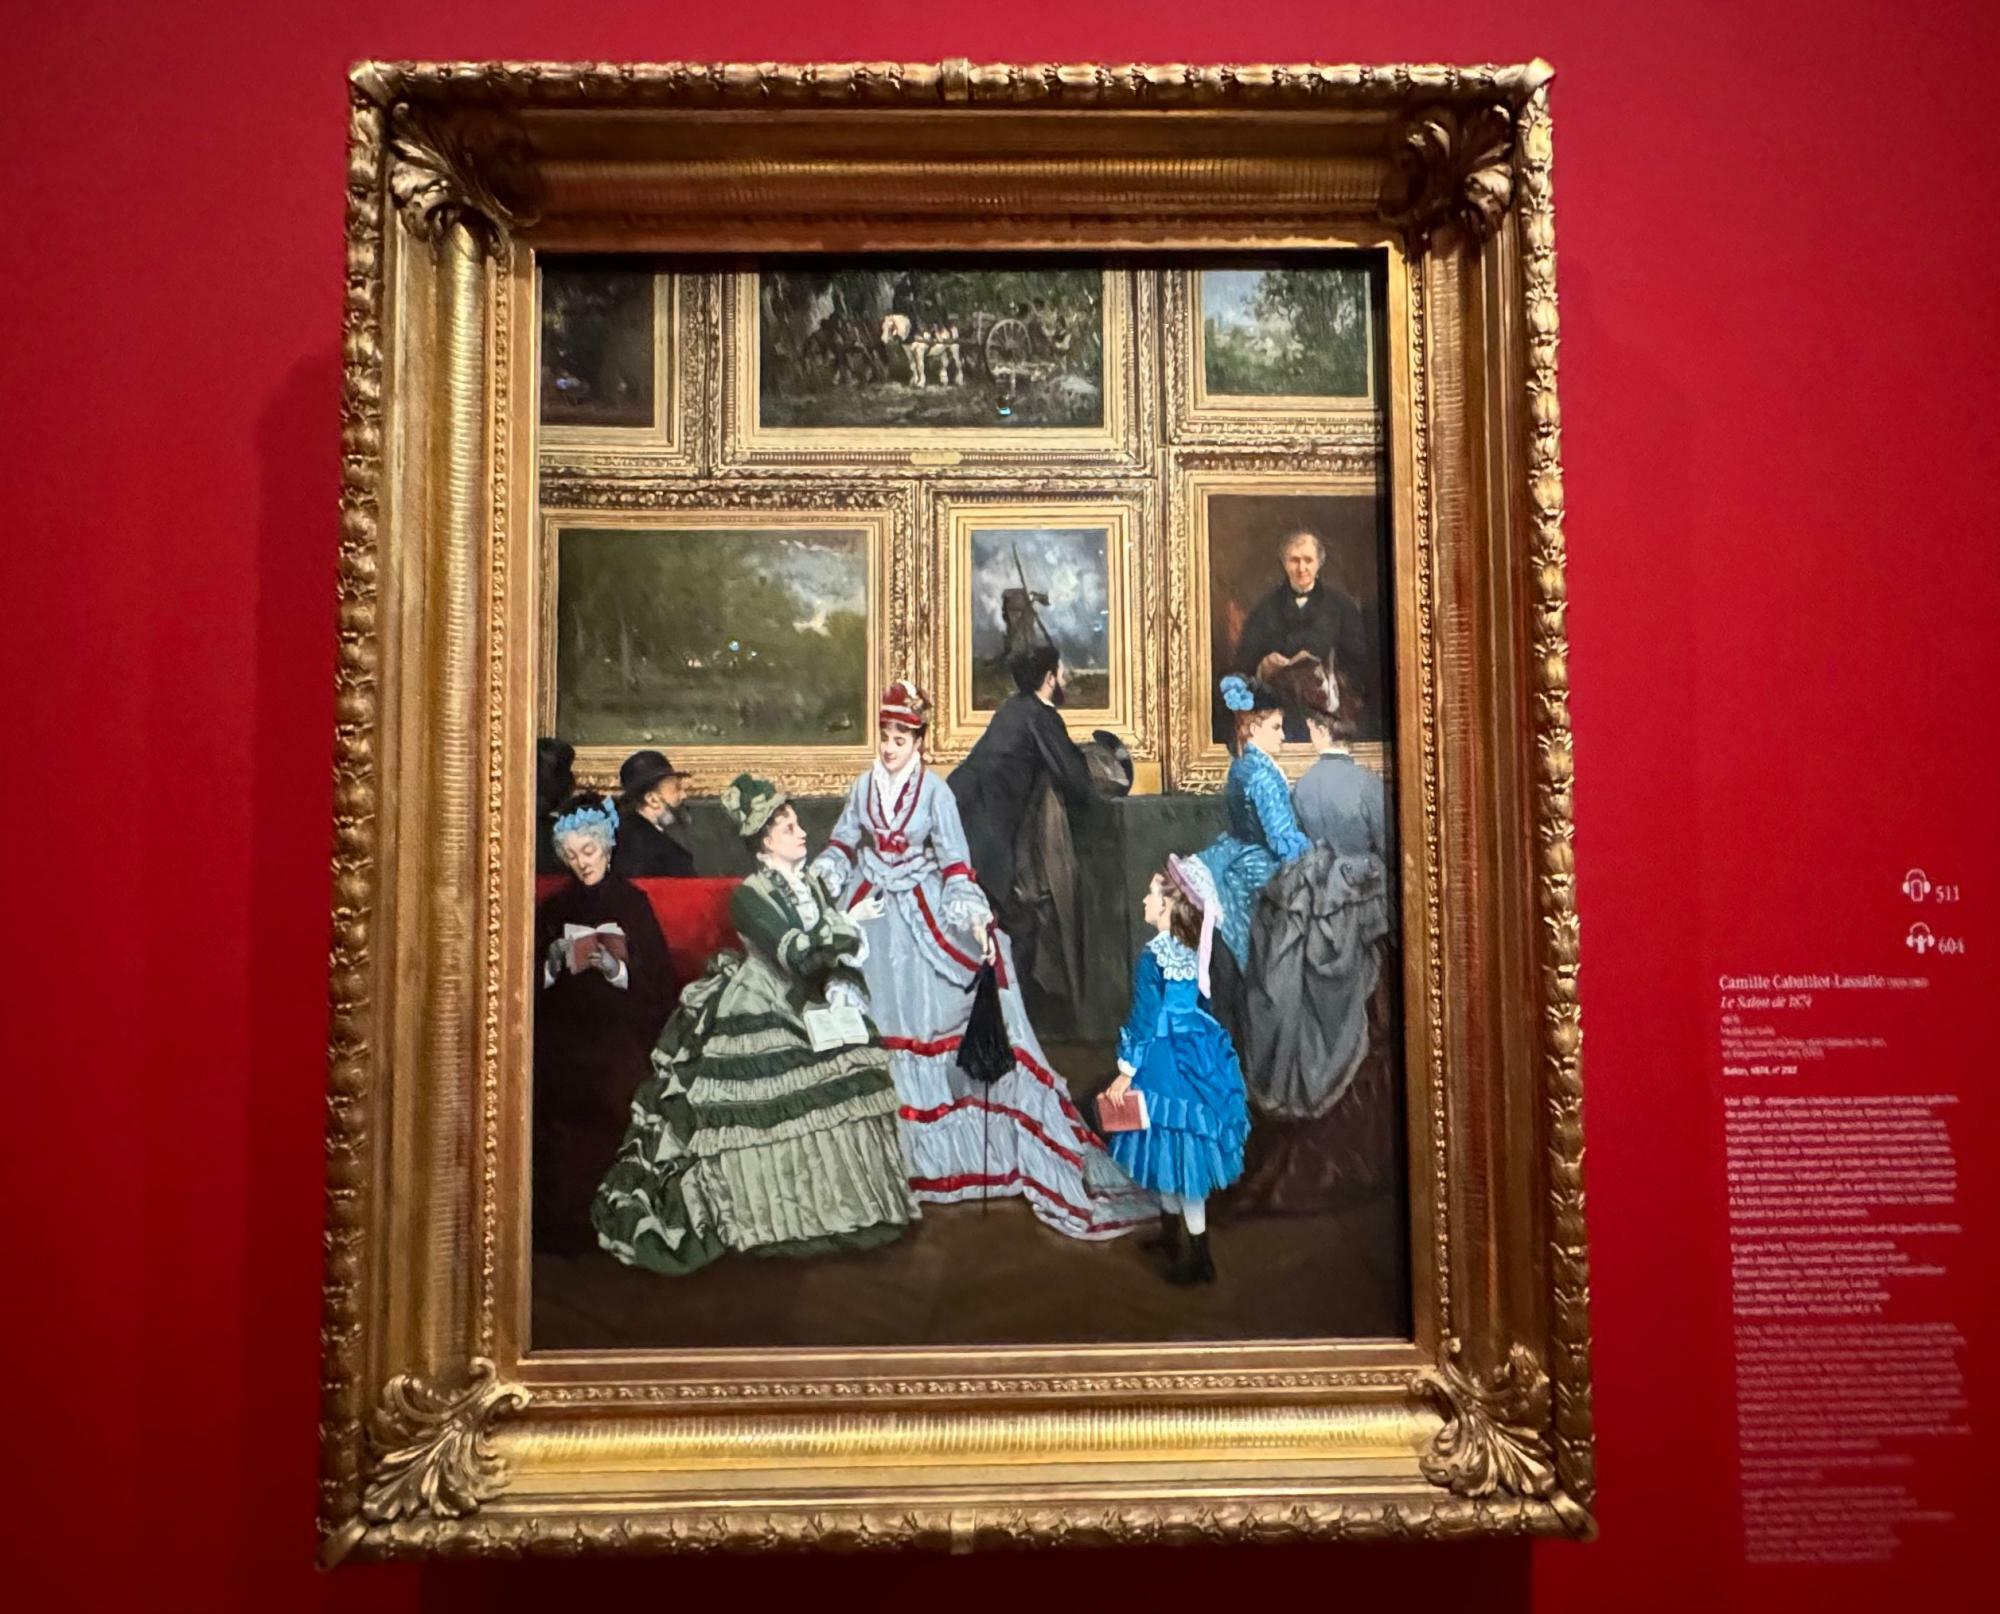 カミーユ・カイユボット＝ラサール「1874年のサロン」（オルセー美術館所蔵）。1874年サロン出品作品で、当時のサロンの来場者たちを描くと同時に、陳列作品も克明に再現している